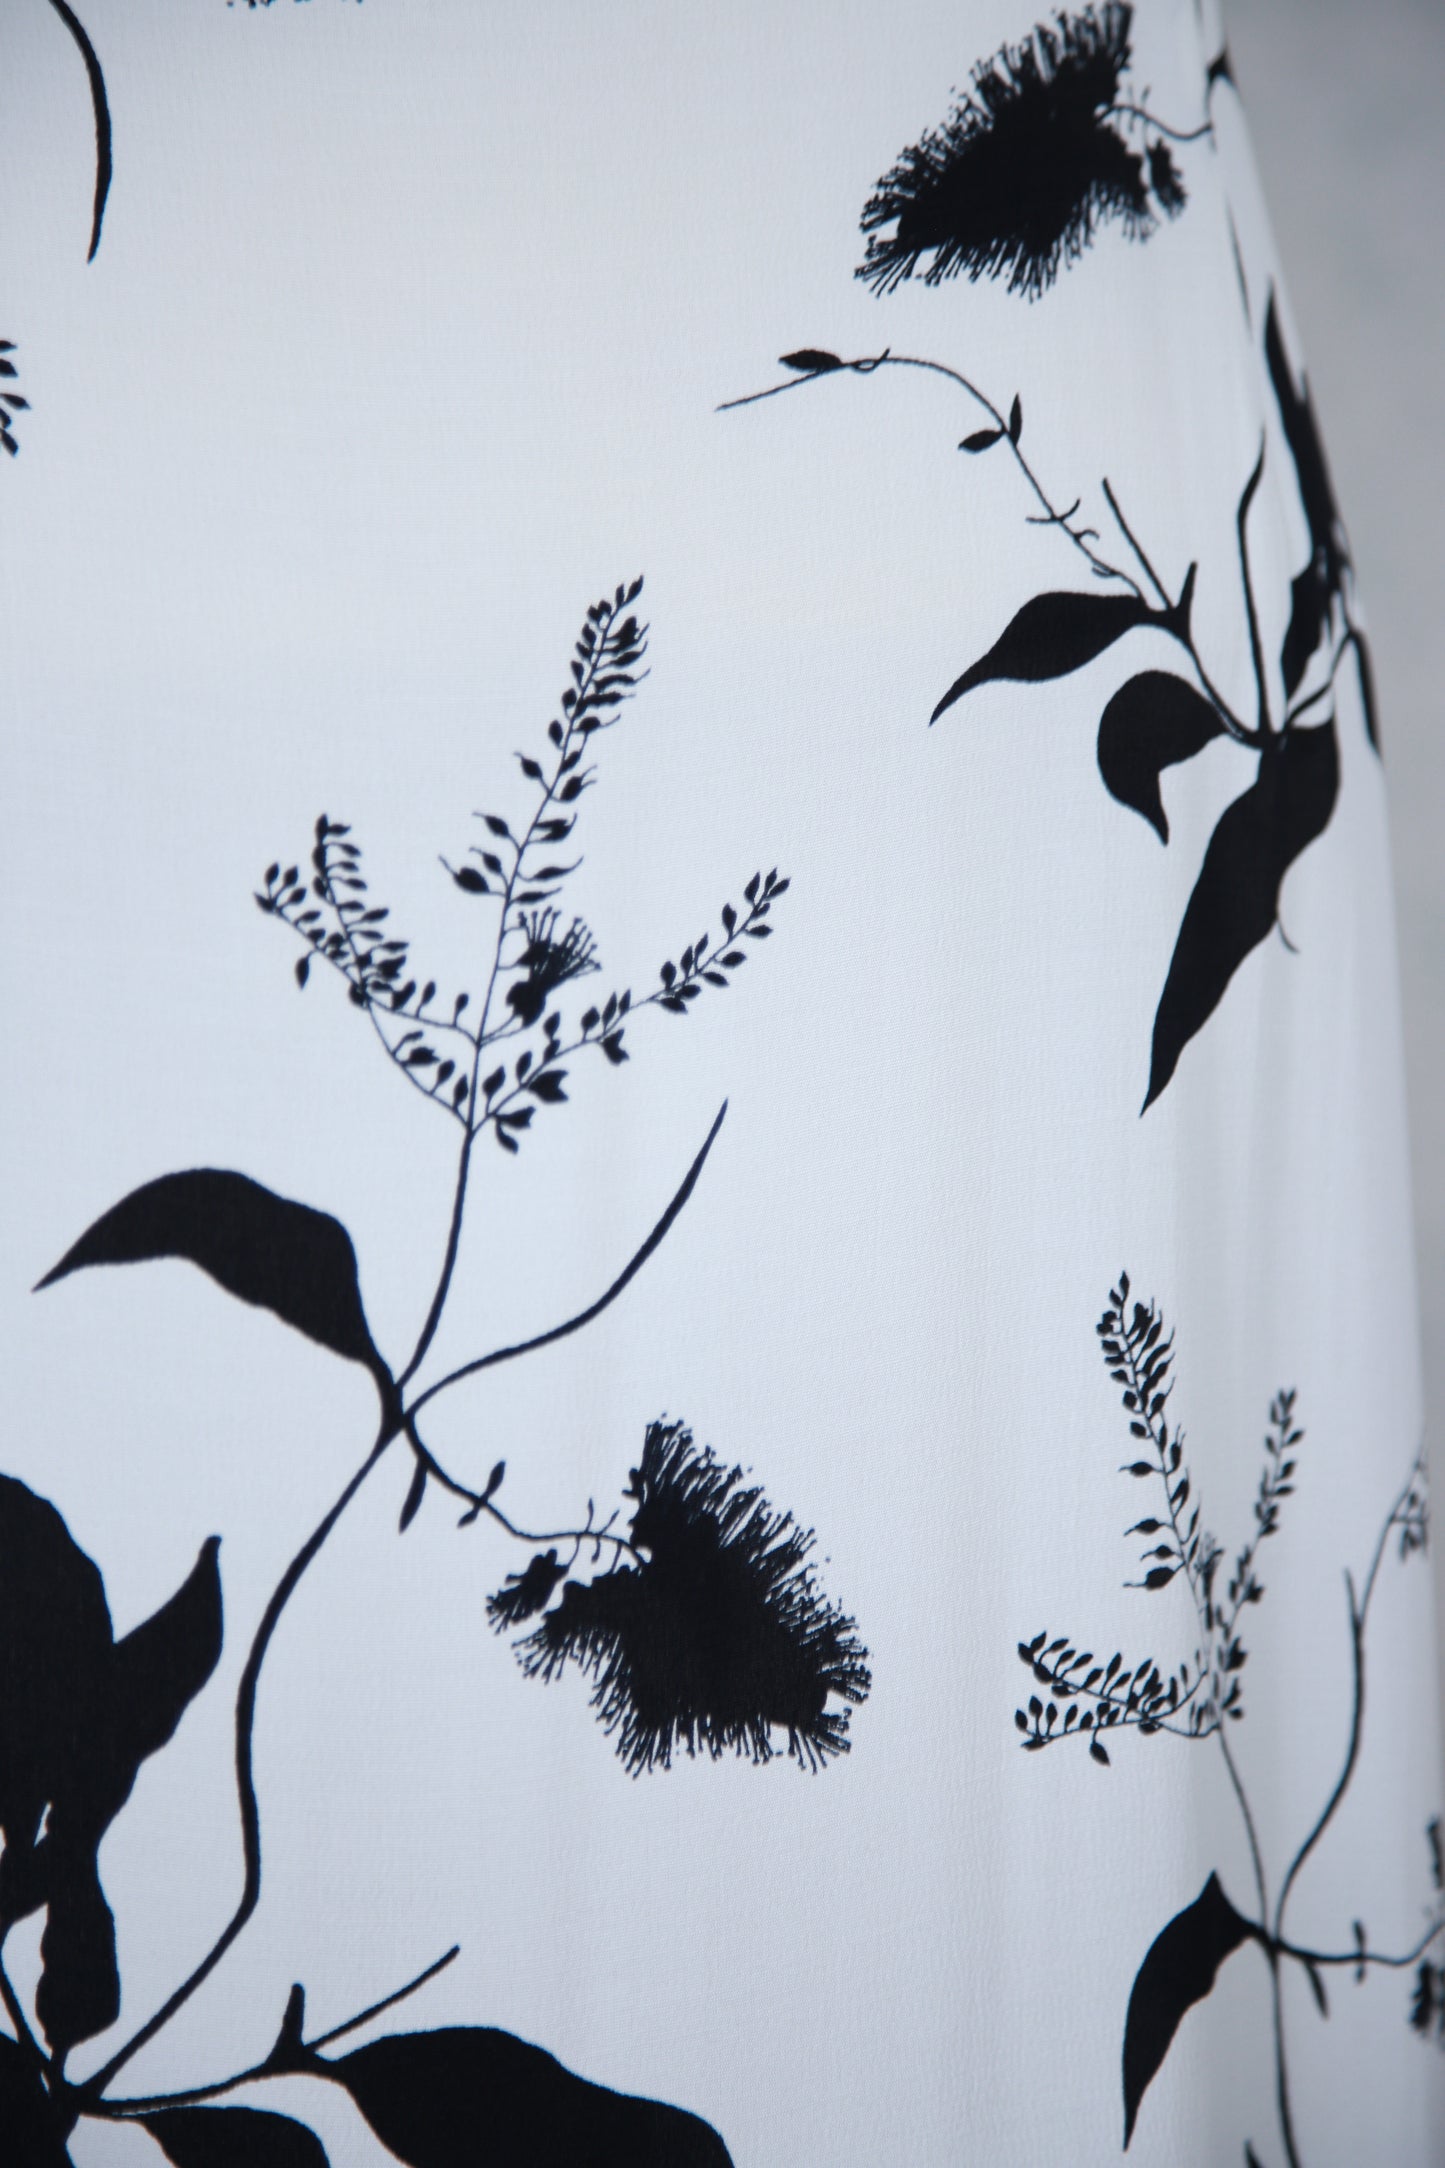 Mustavalkoinen kukkakuviollinen Lena mekko, käyttämätöntä vanhaa varastoa